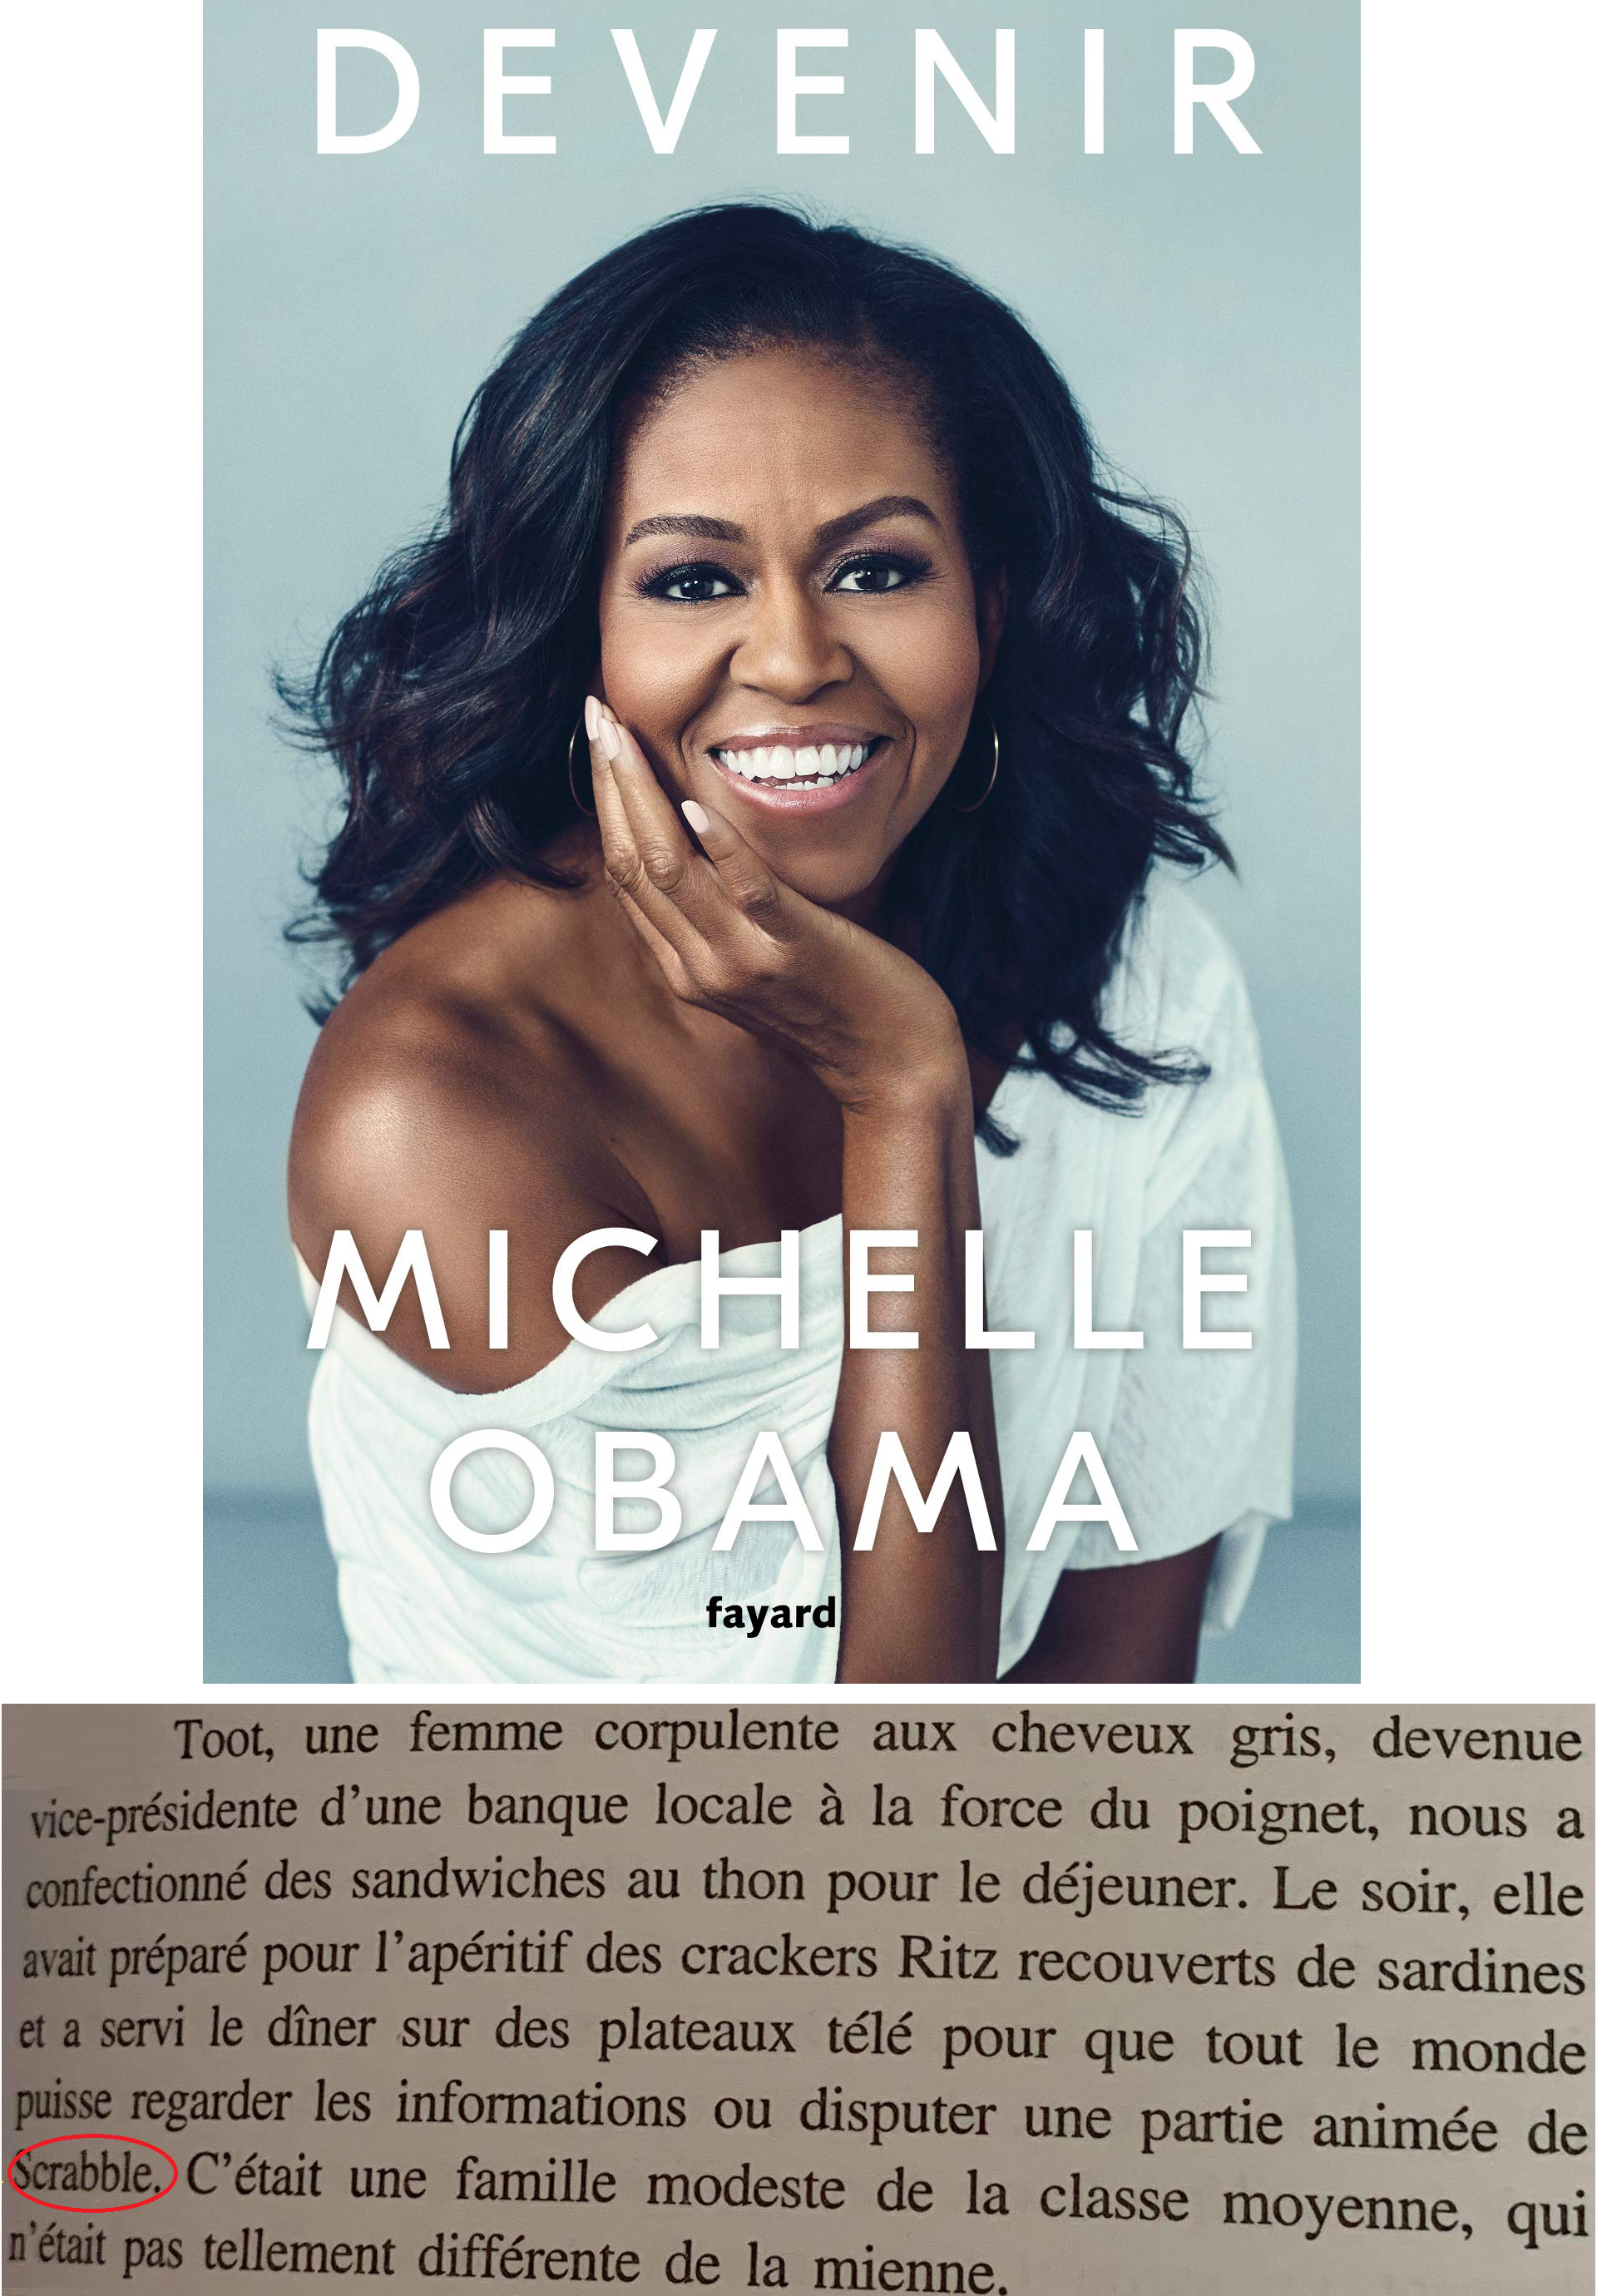 Devenir Michelle Obama